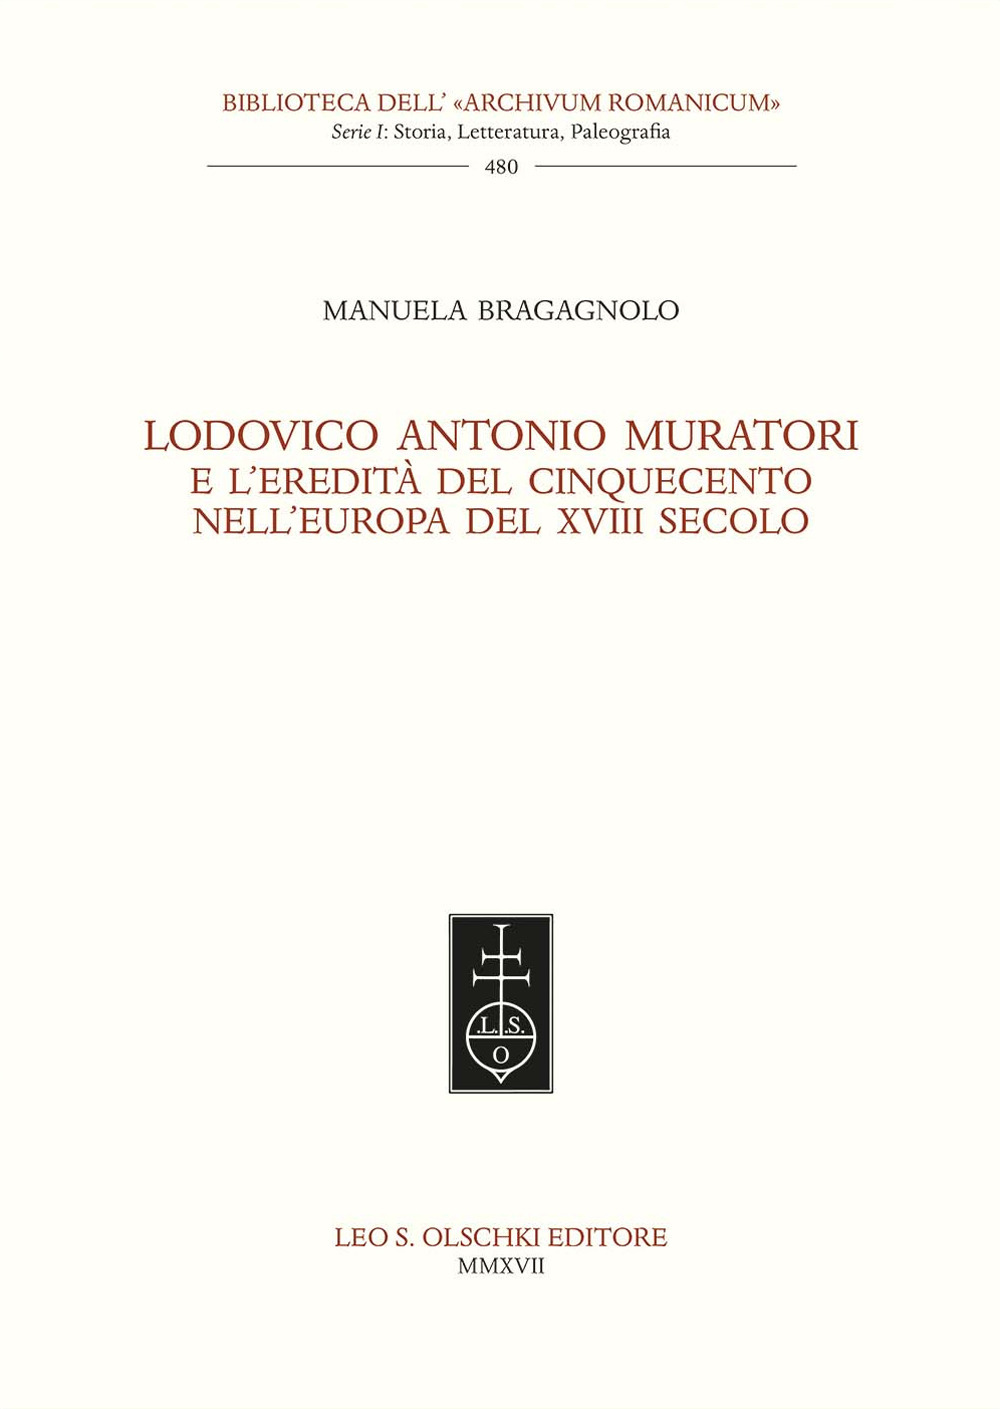 Lodovico Antonio Muratori e l'eredità del Cinquecento nell'Europa del XVIII secolo